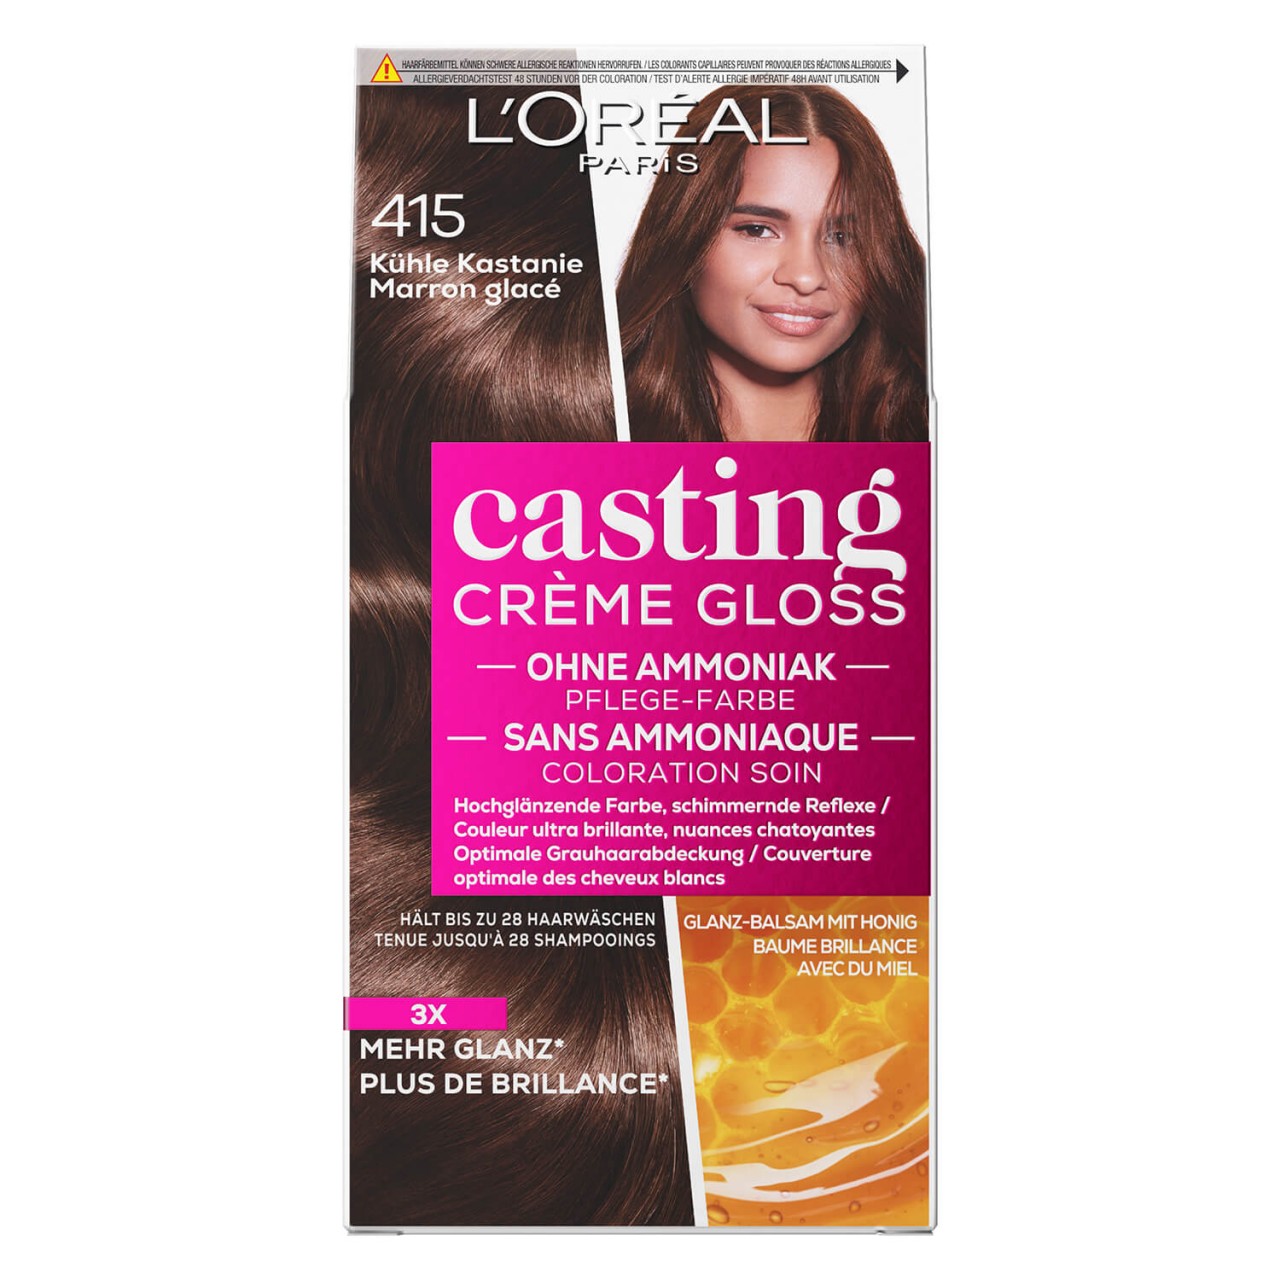 LOréal Casting - Crème Gloss 415 Kühle Kastanie von L'Oréal Paris